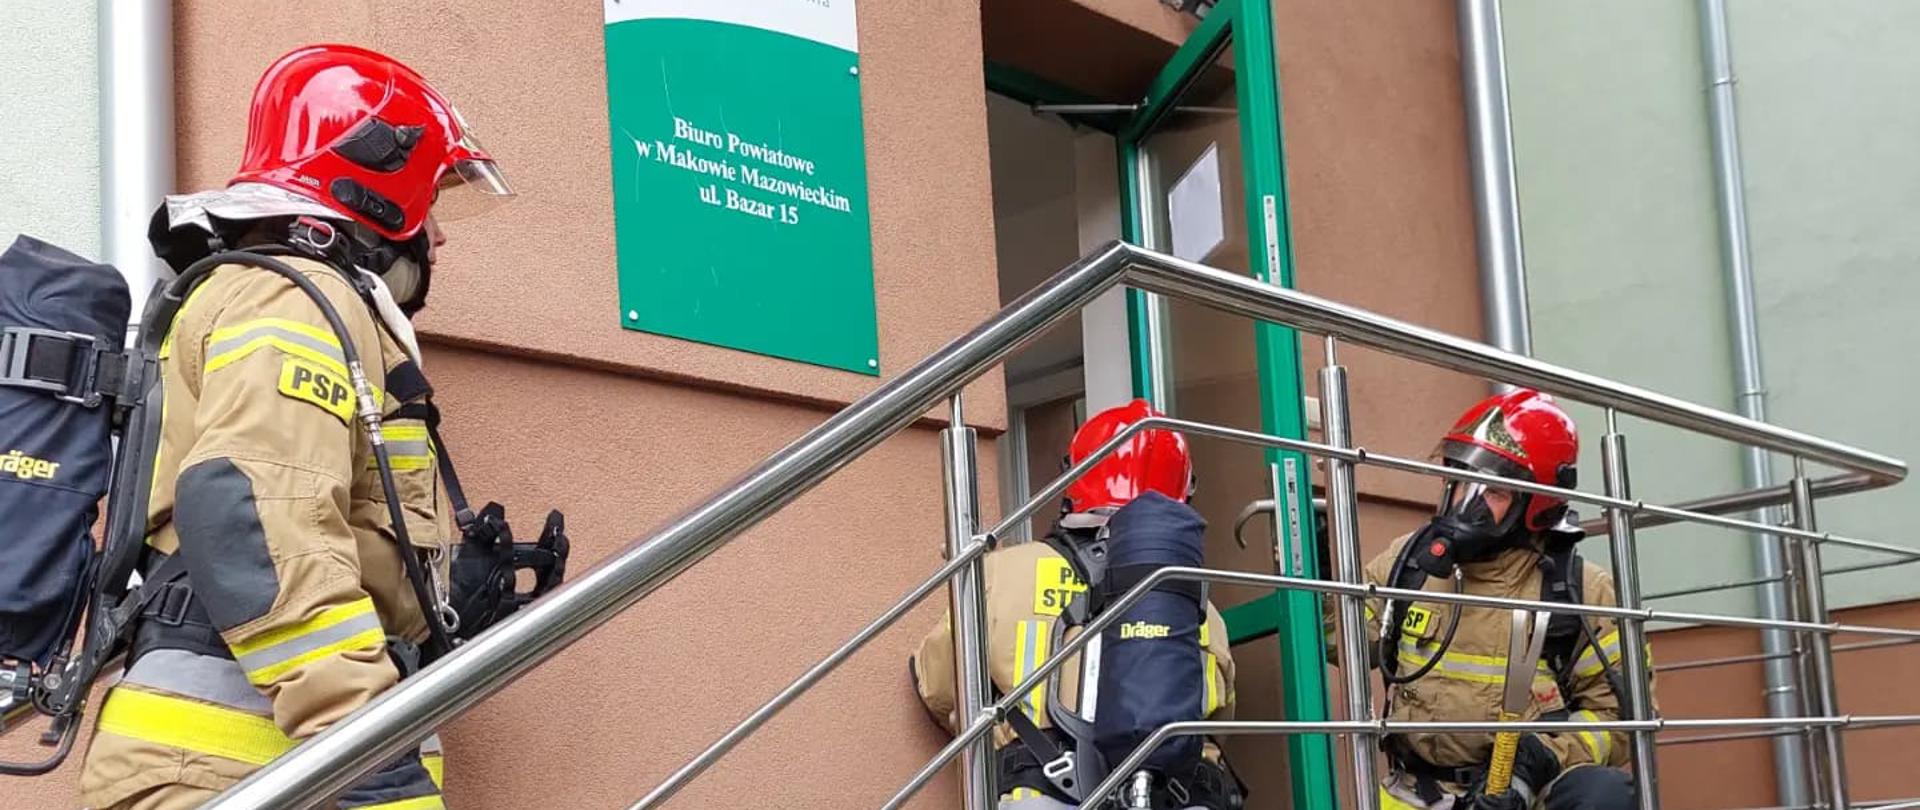 Trzech strażaków stoi na schodach przed wejściem do budynku. Jeden z nich otwiera drzwi.